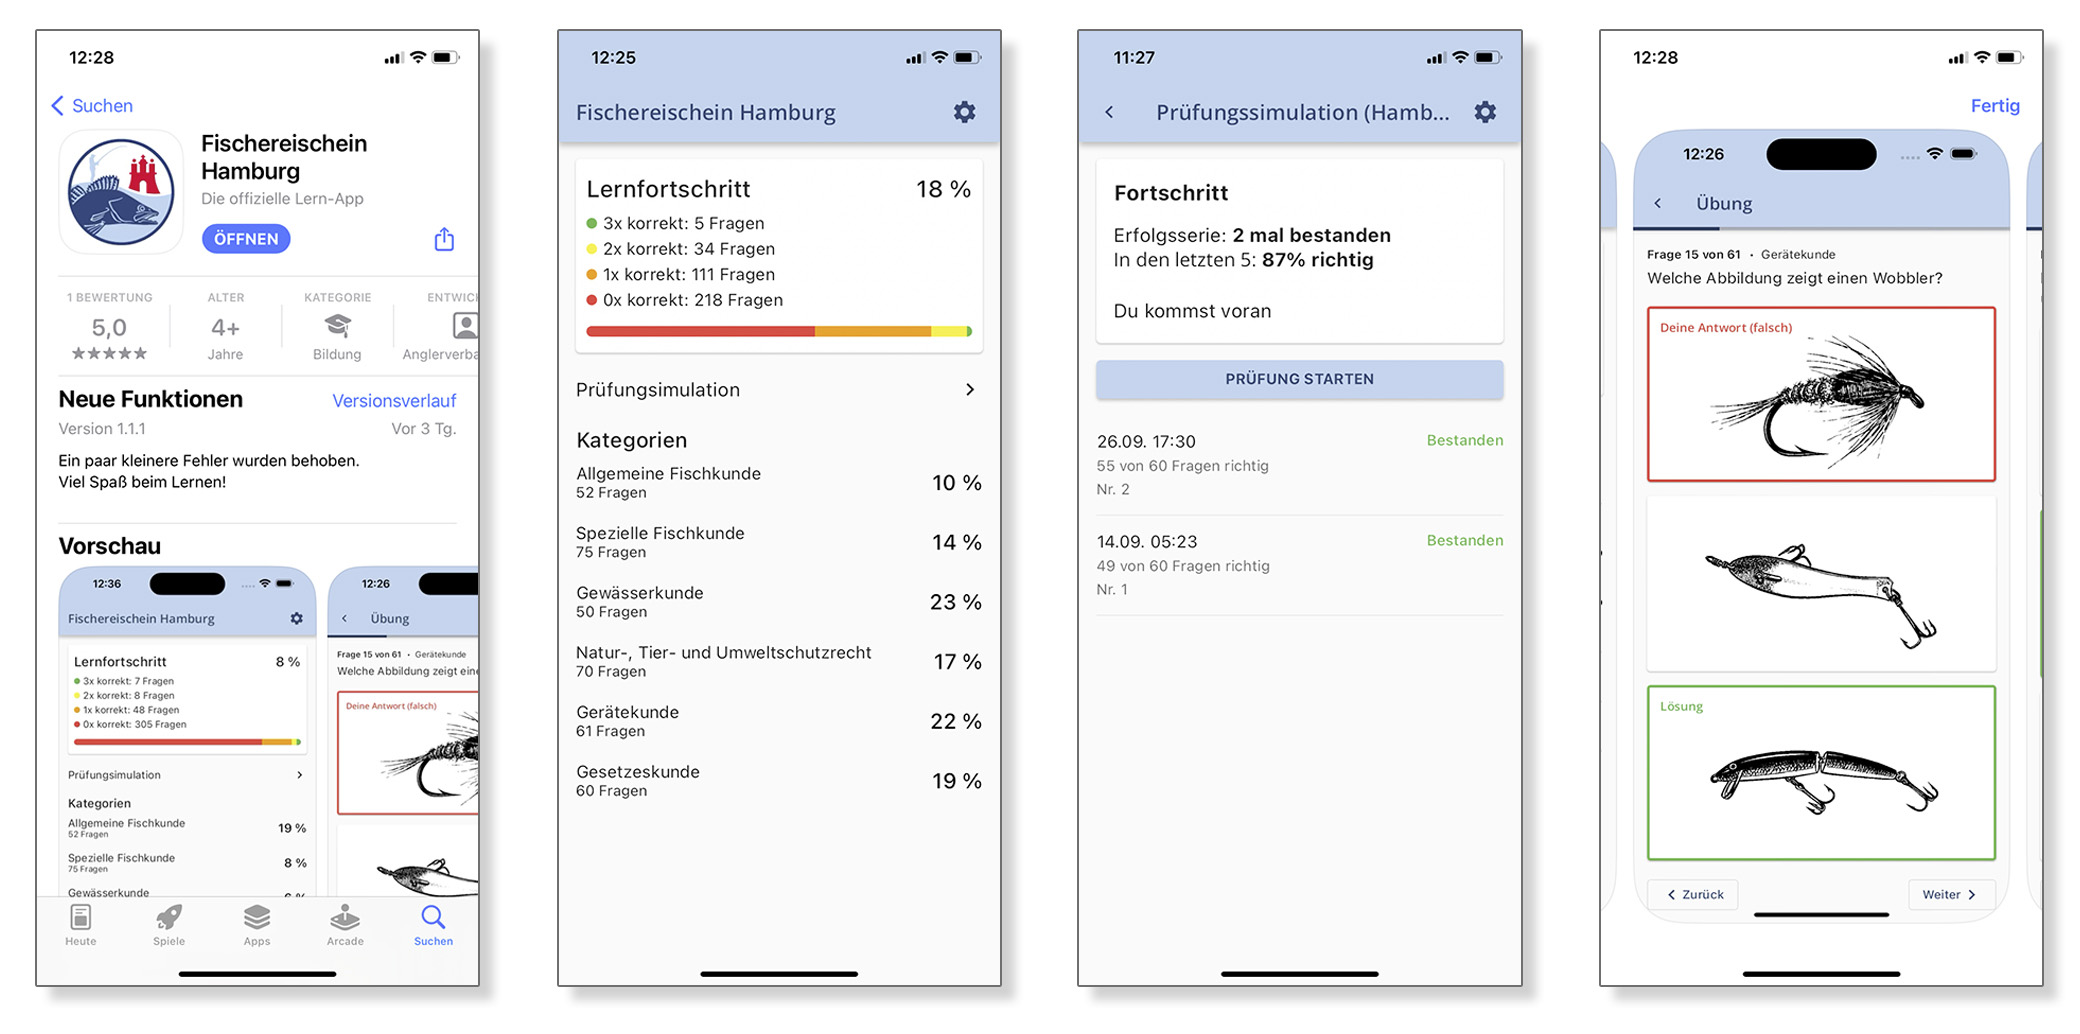 Lern-App "Fischereischein Hamburg": Screenshots